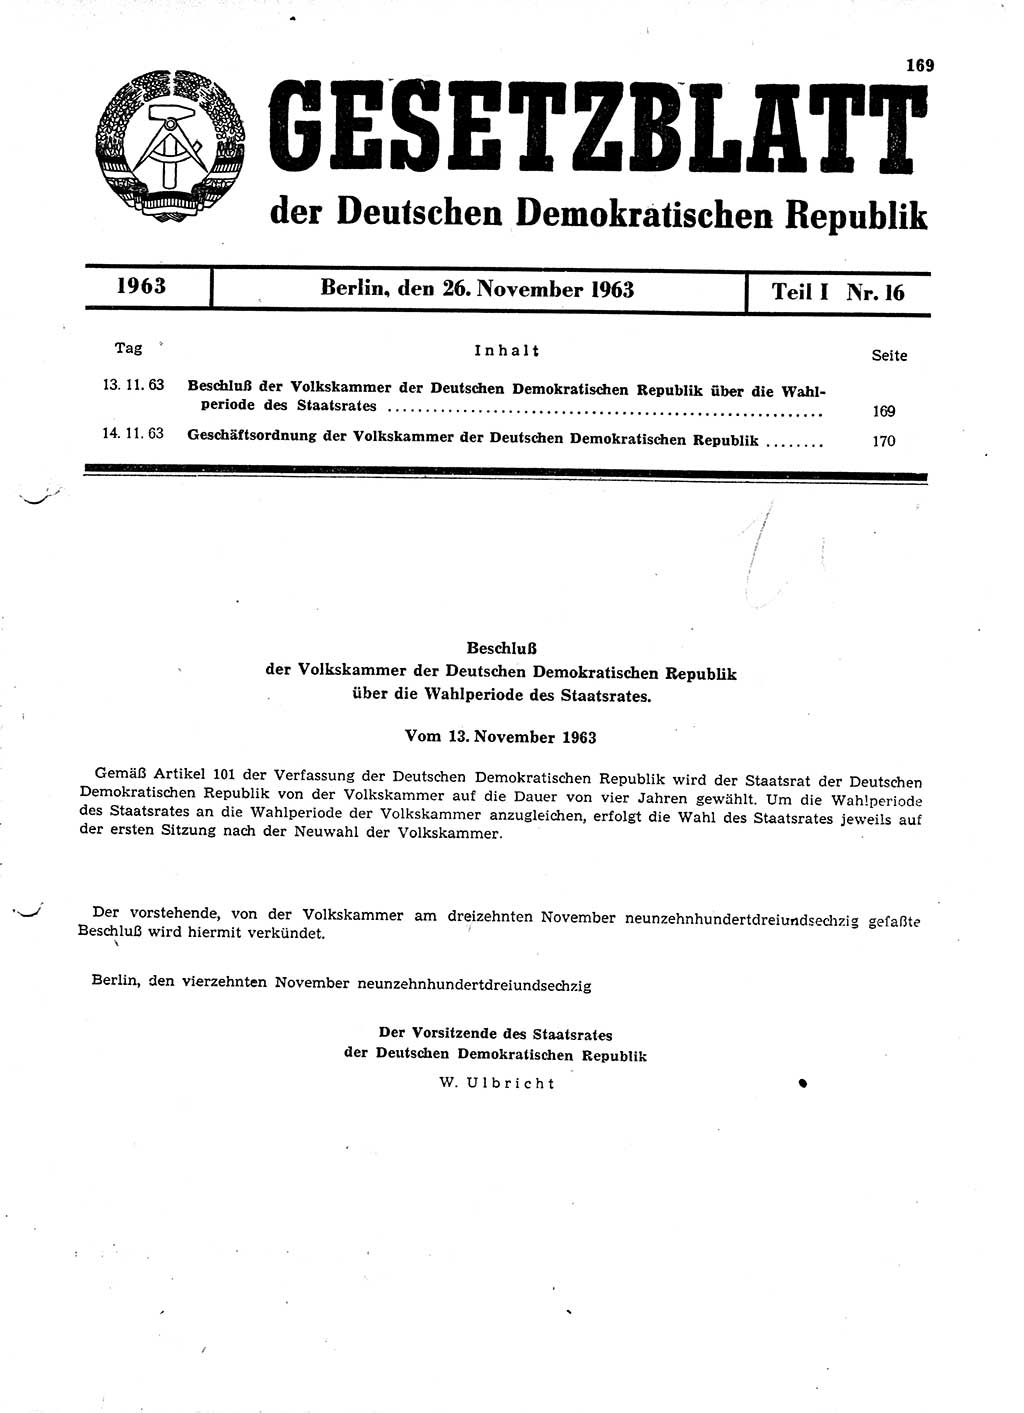 Gesetzblatt (GBl.) der Deutschen Demokratischen Republik (DDR) Teil Ⅰ 1963, Seite 169 (GBl. DDR Ⅰ 1963, S. 169)